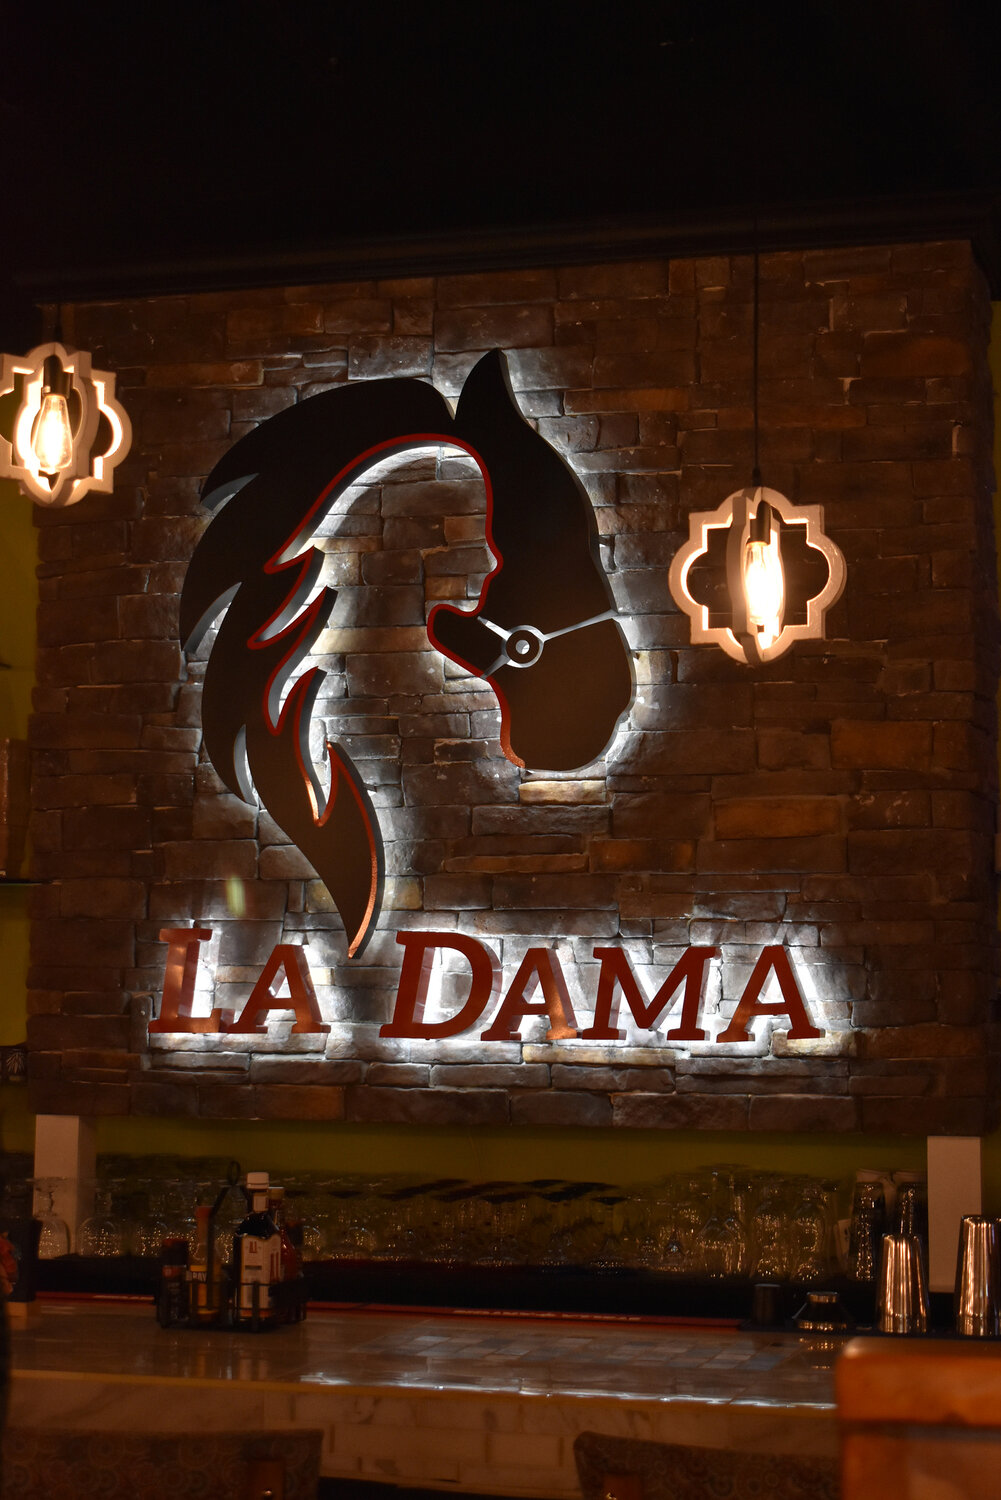 La Dama, Mexican restaurant in Dagsboro, Del.